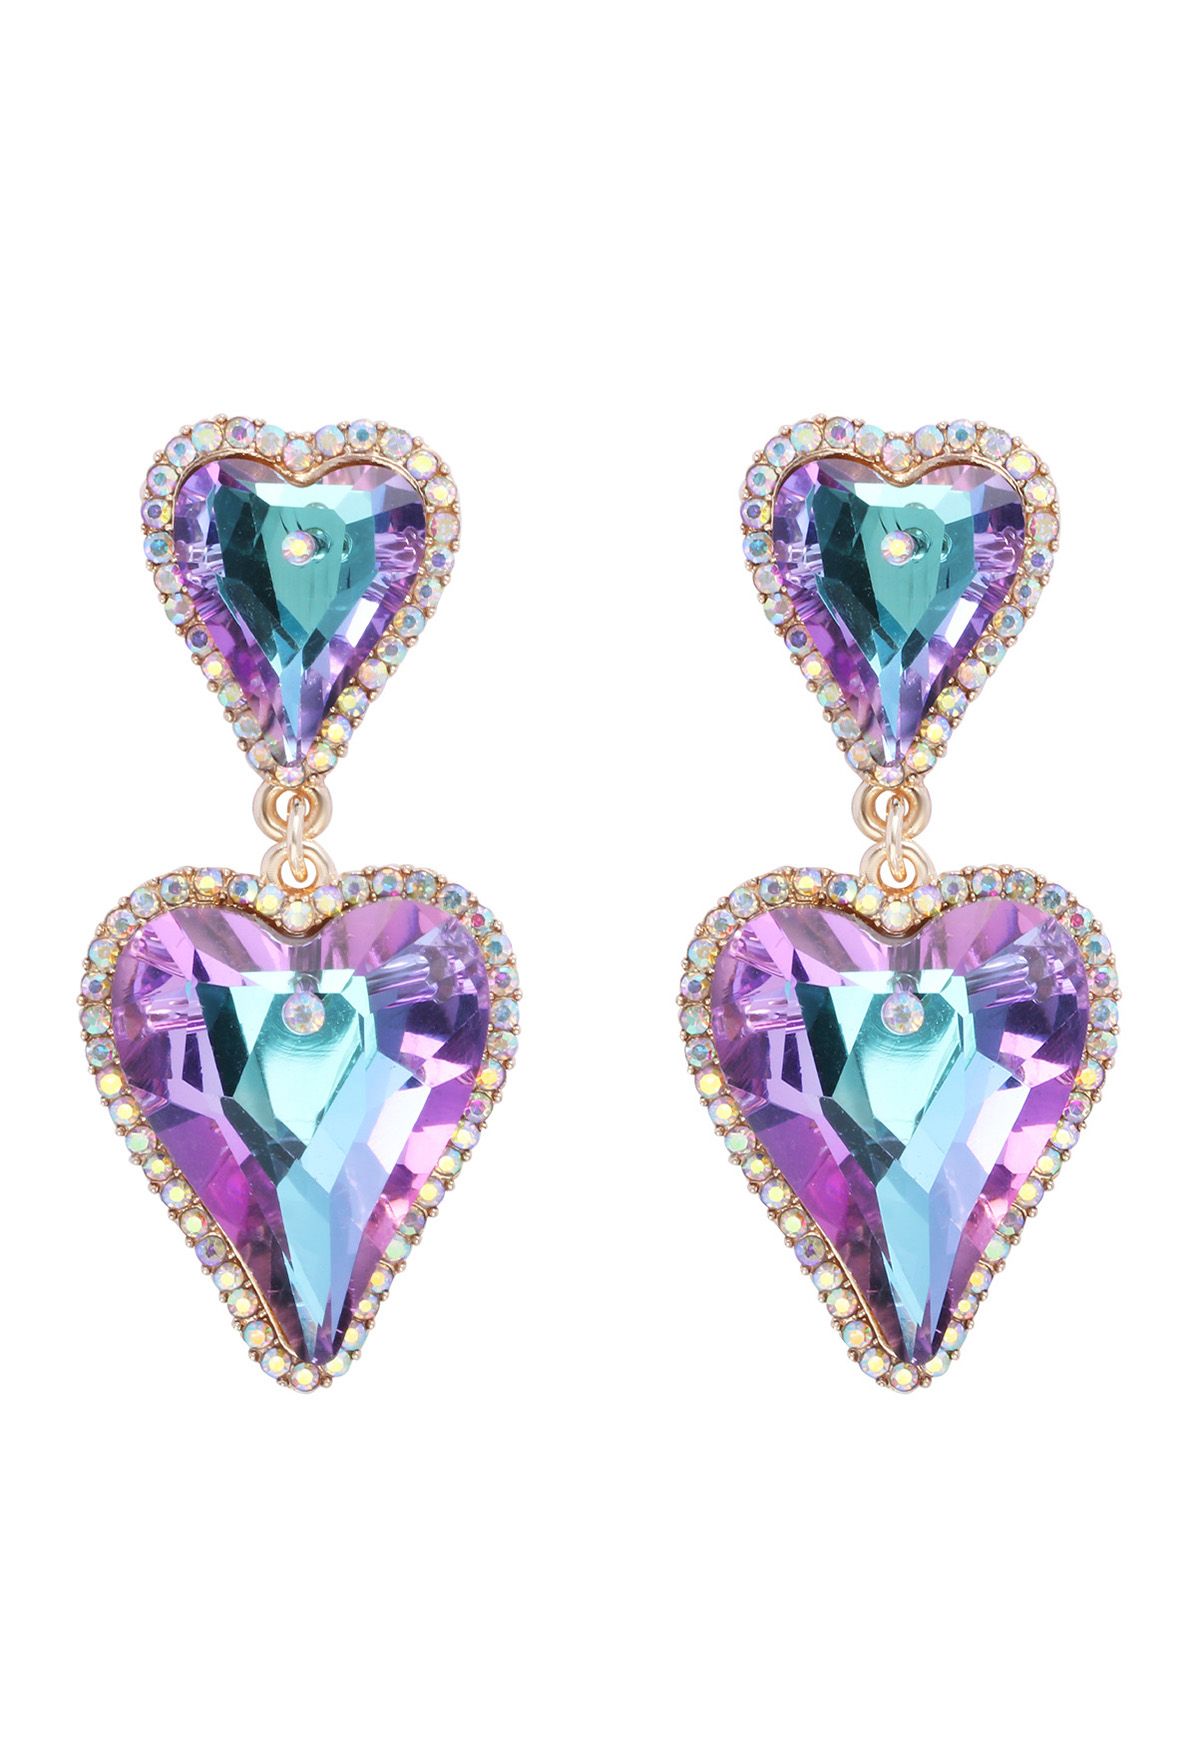 Dazzling Glam Rhinestone Heart Earrings